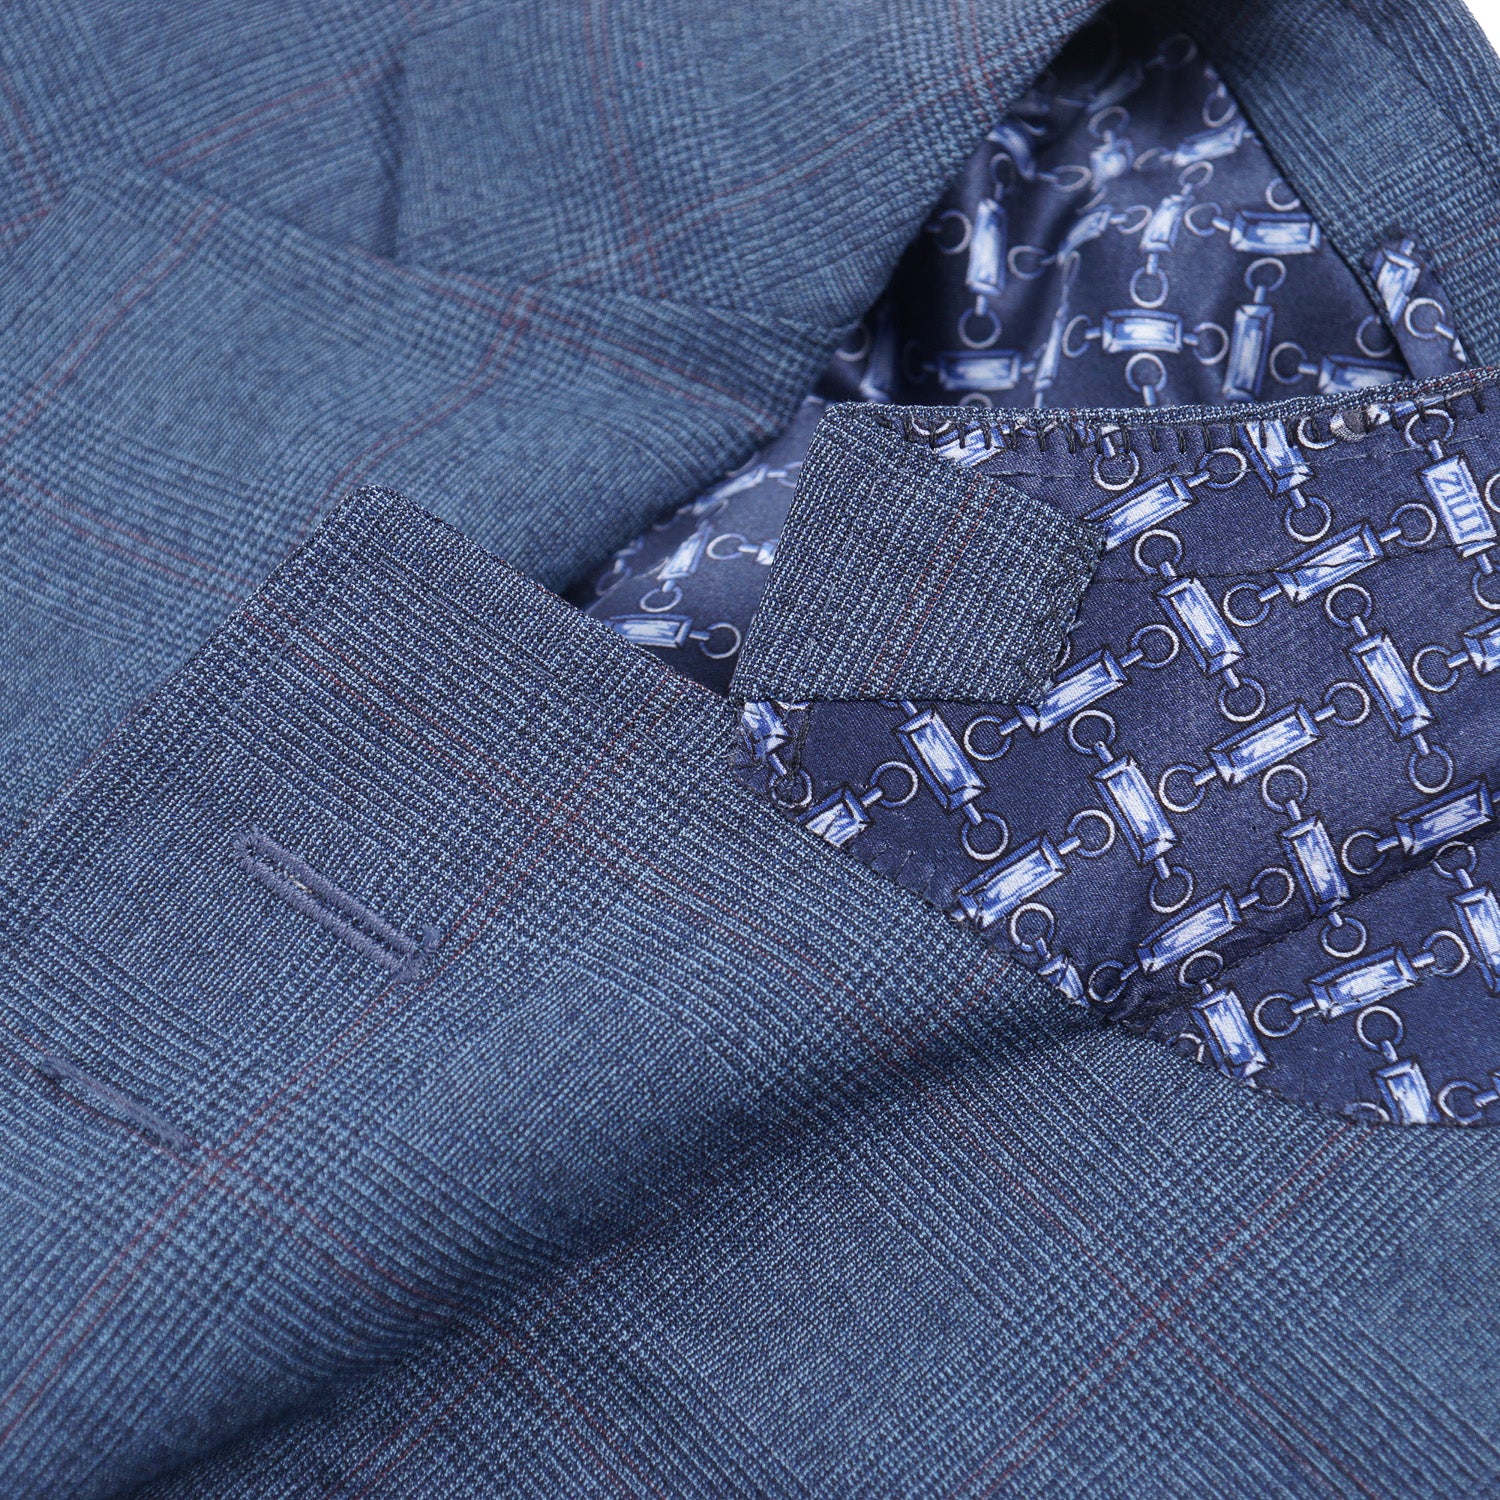 Zilli Blue Check Lightweight Wool Suit - Top Shelf Apparel